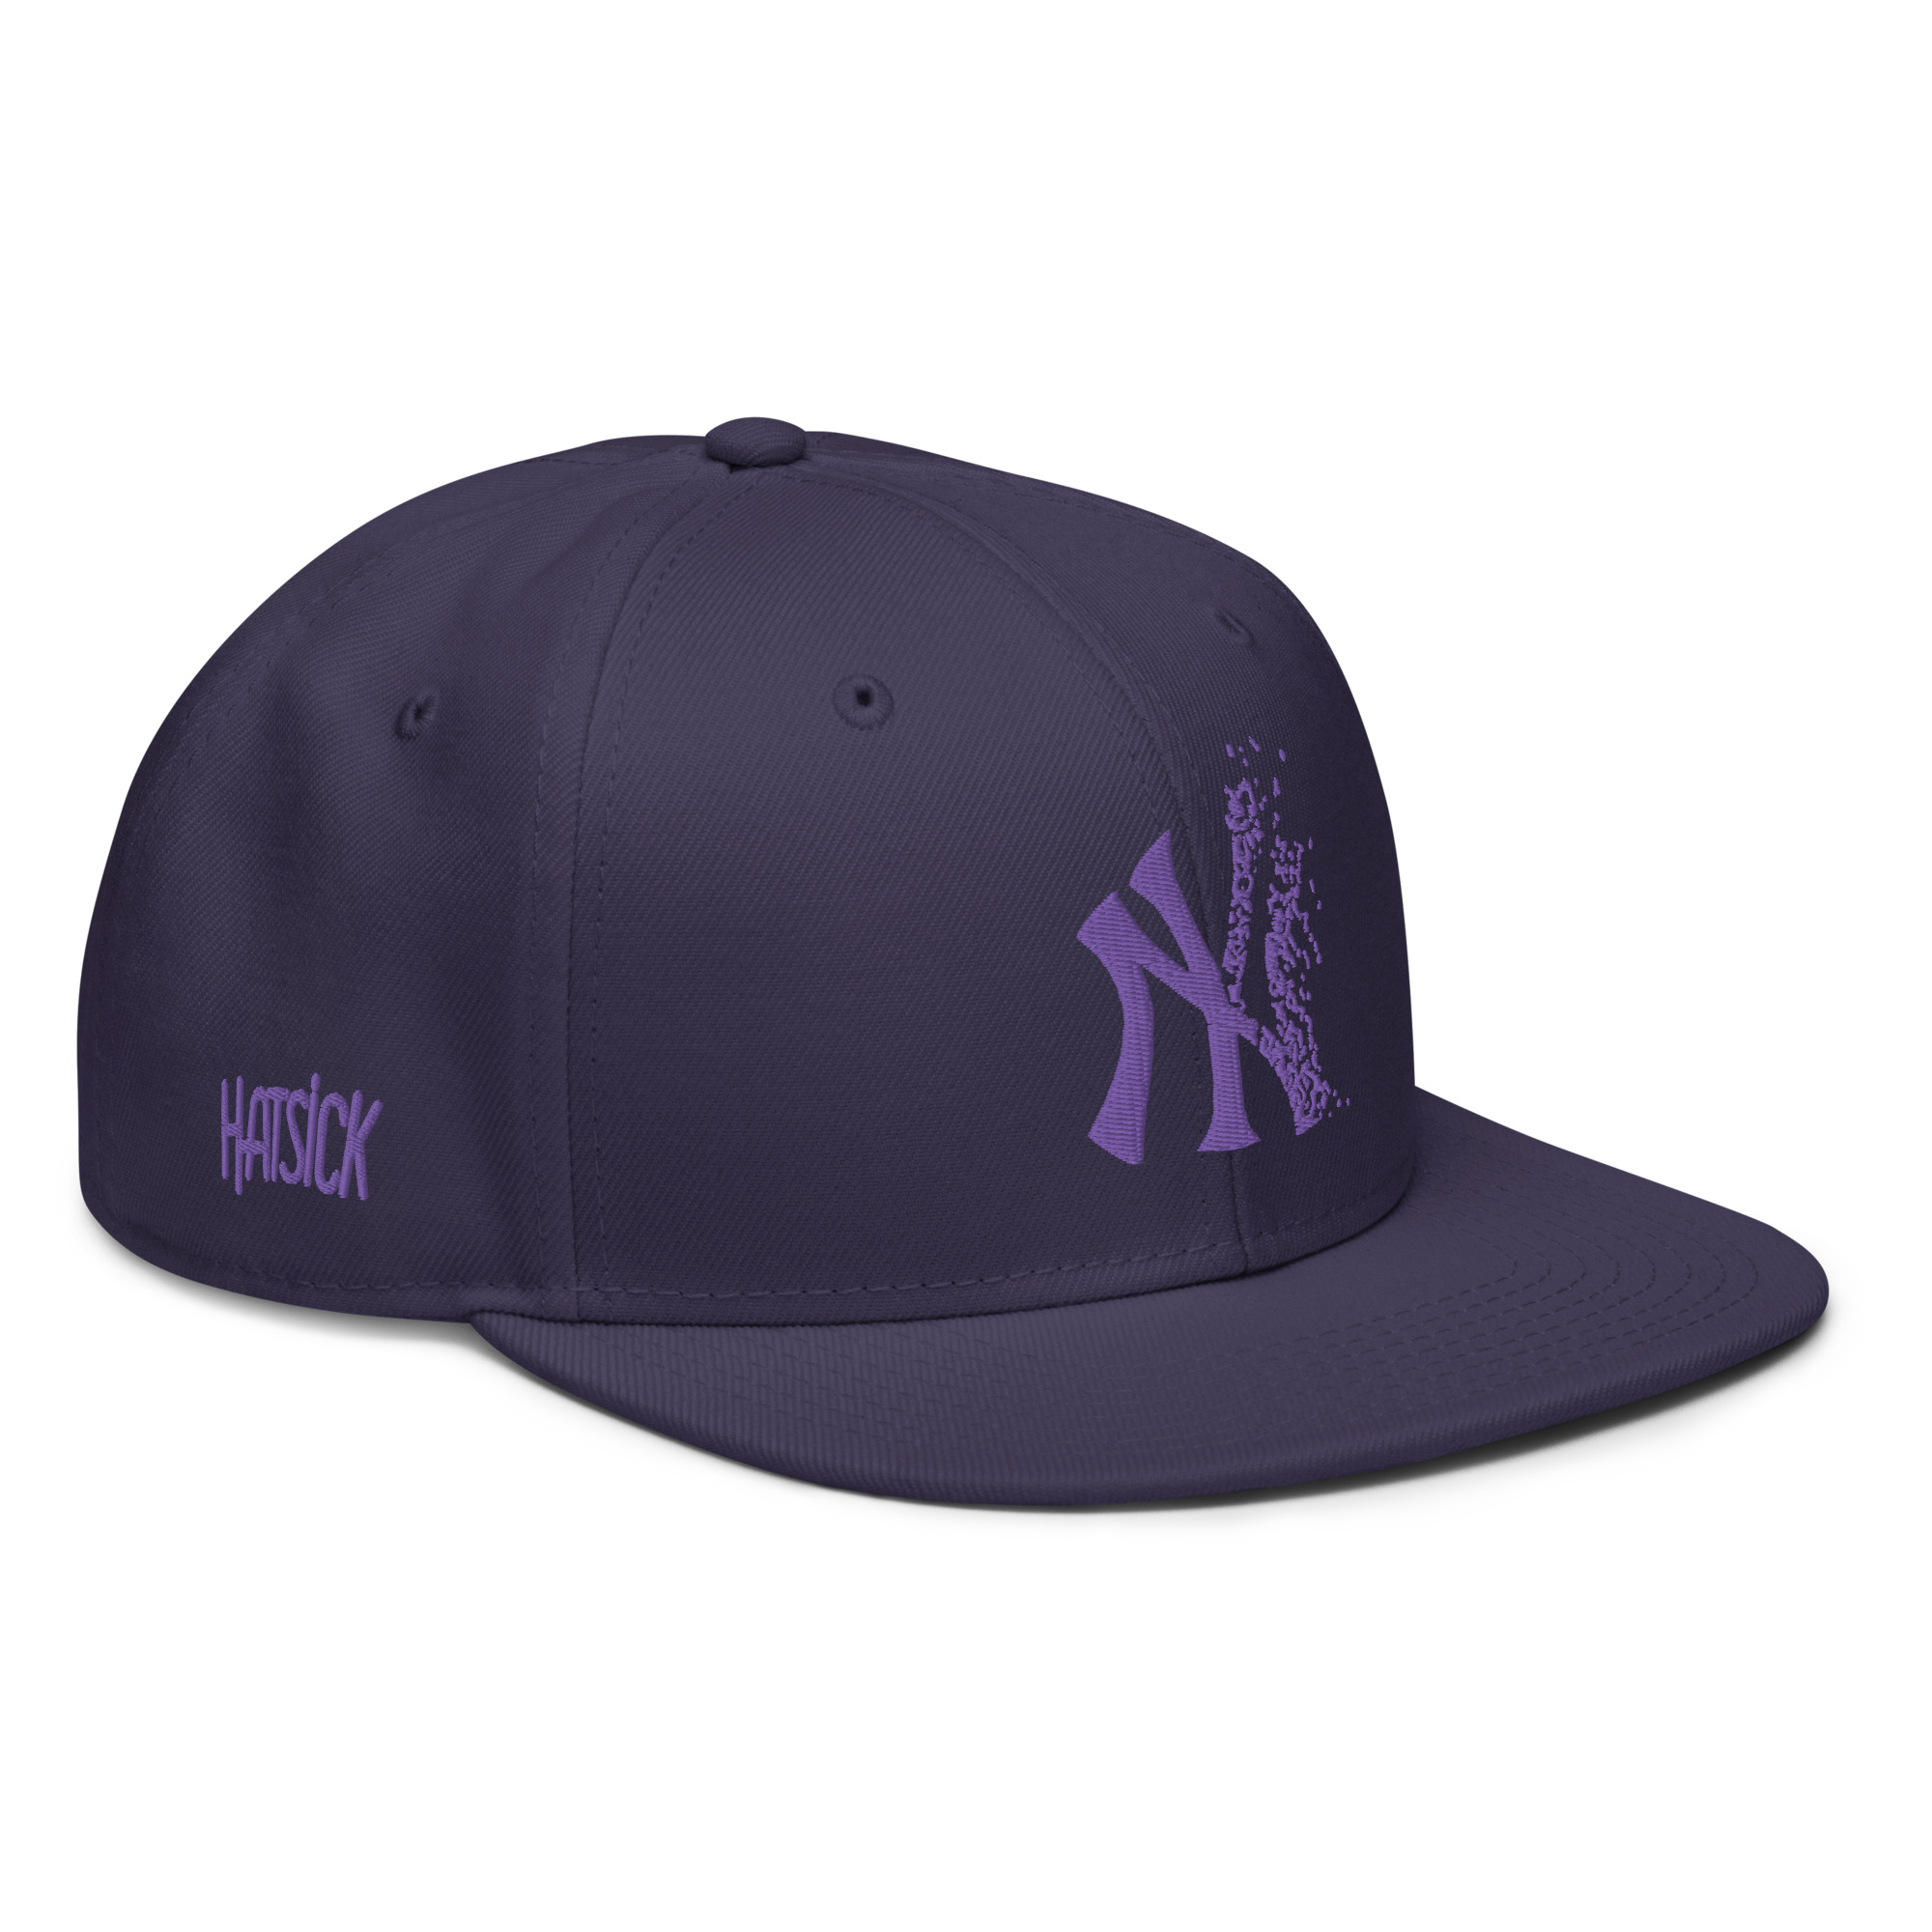 NY Yankees snapback hat